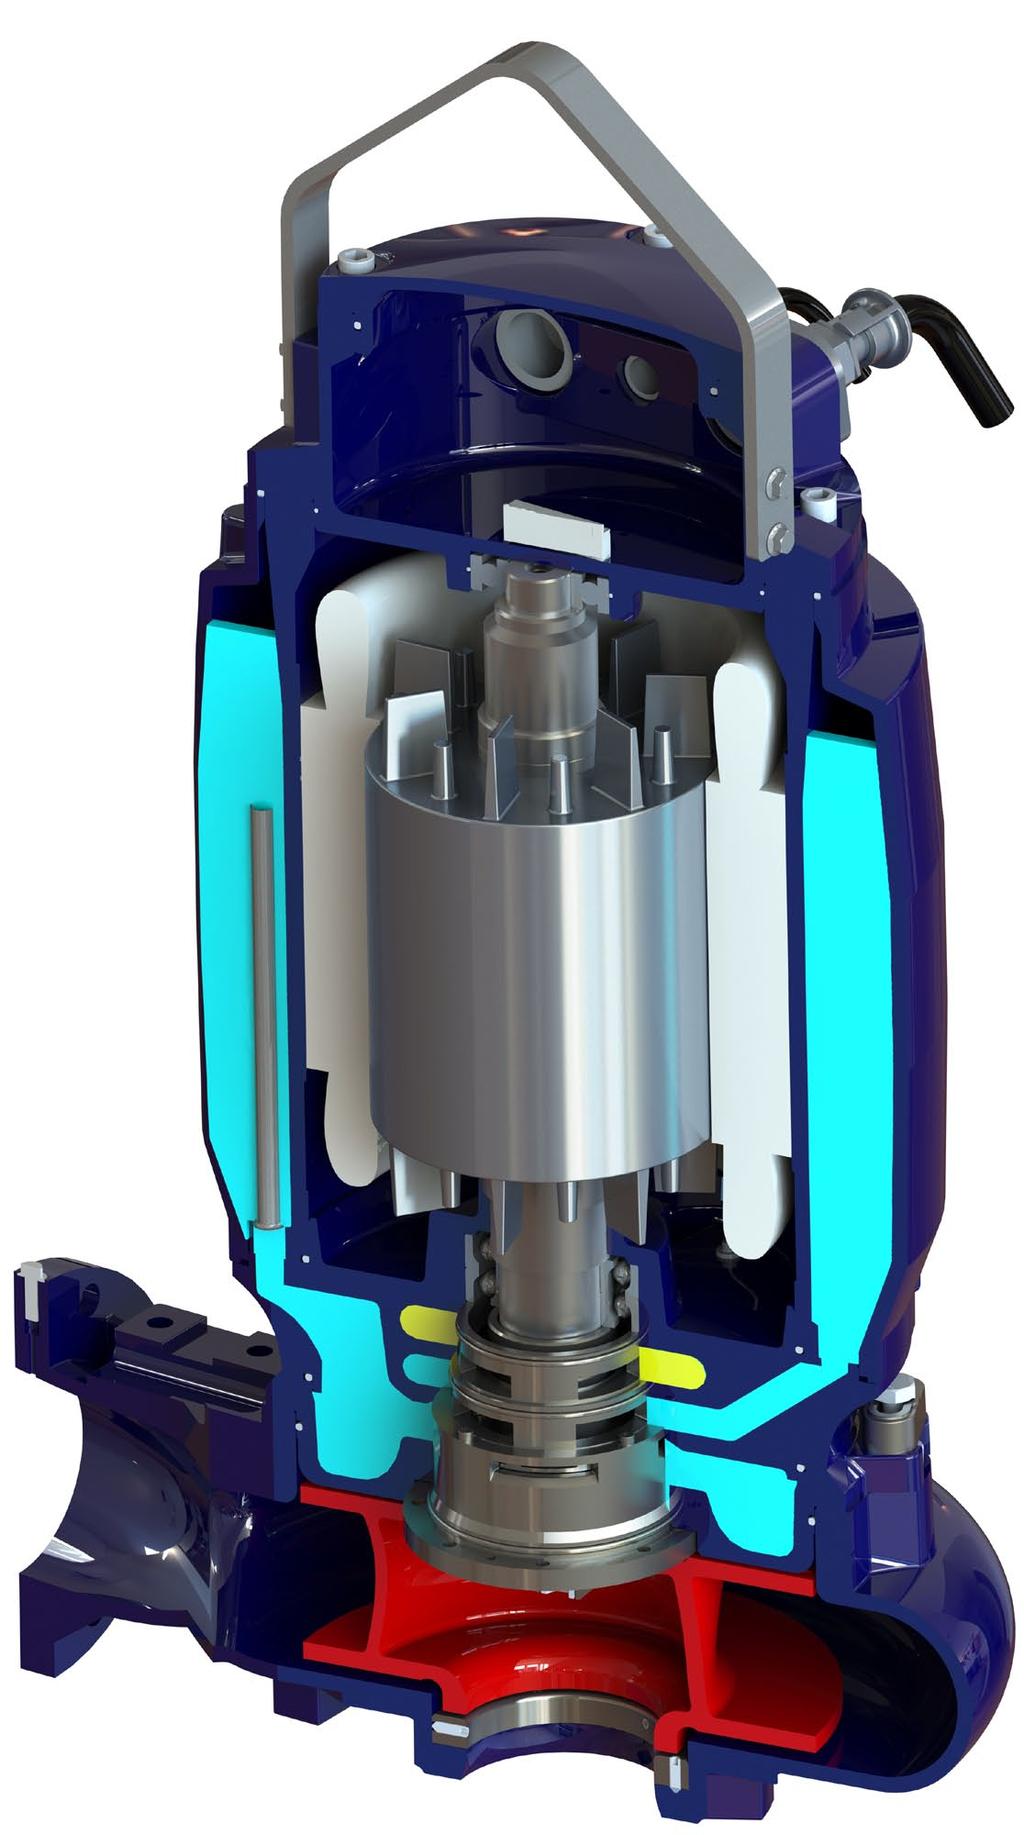 PXFLOW Spildevands pumper s e w a g e p u m p s DESIGN FORDELE Alle PXFLOW pumper er designet og således at de lever op til de nyeste industrielle specifikationer og er udstyret med flere drifts og